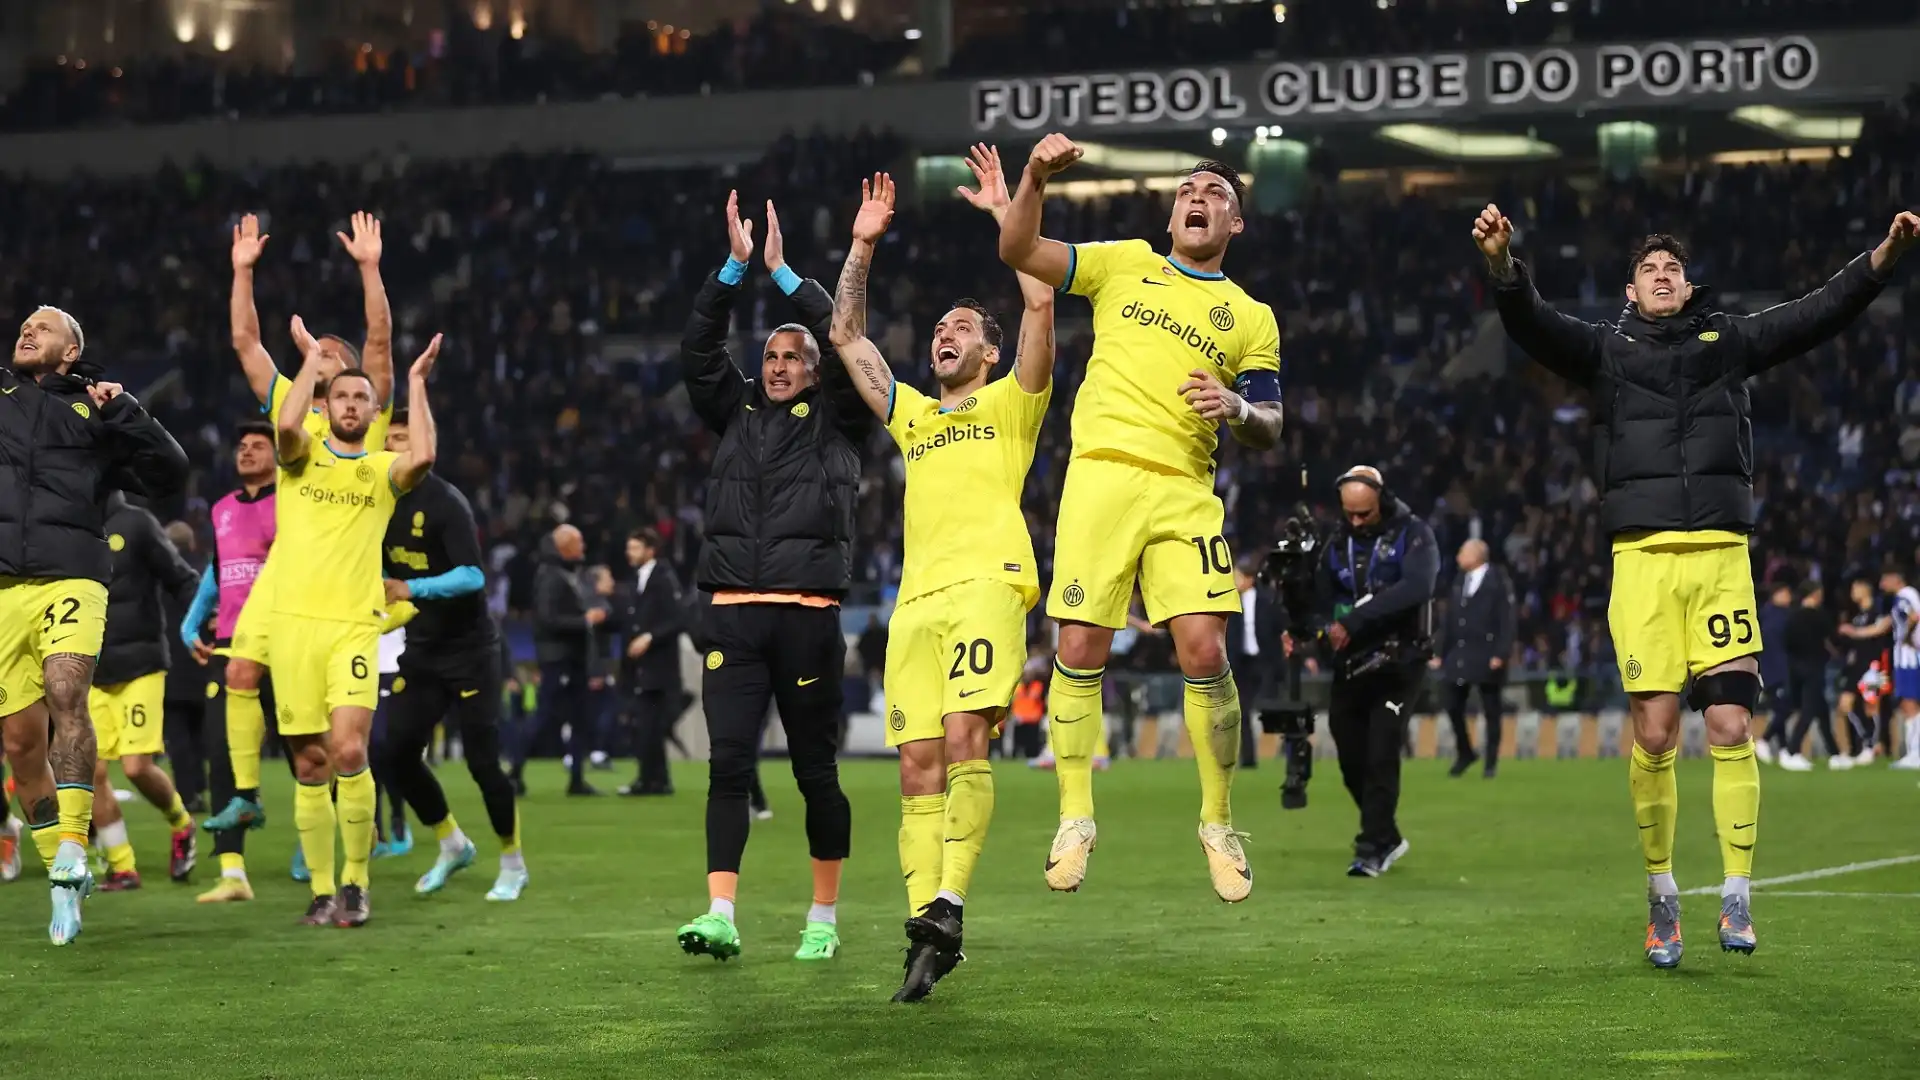 L'Inter festeggia e torna ai quarti di finale di Champions League per la prima volta dopo 12 anni